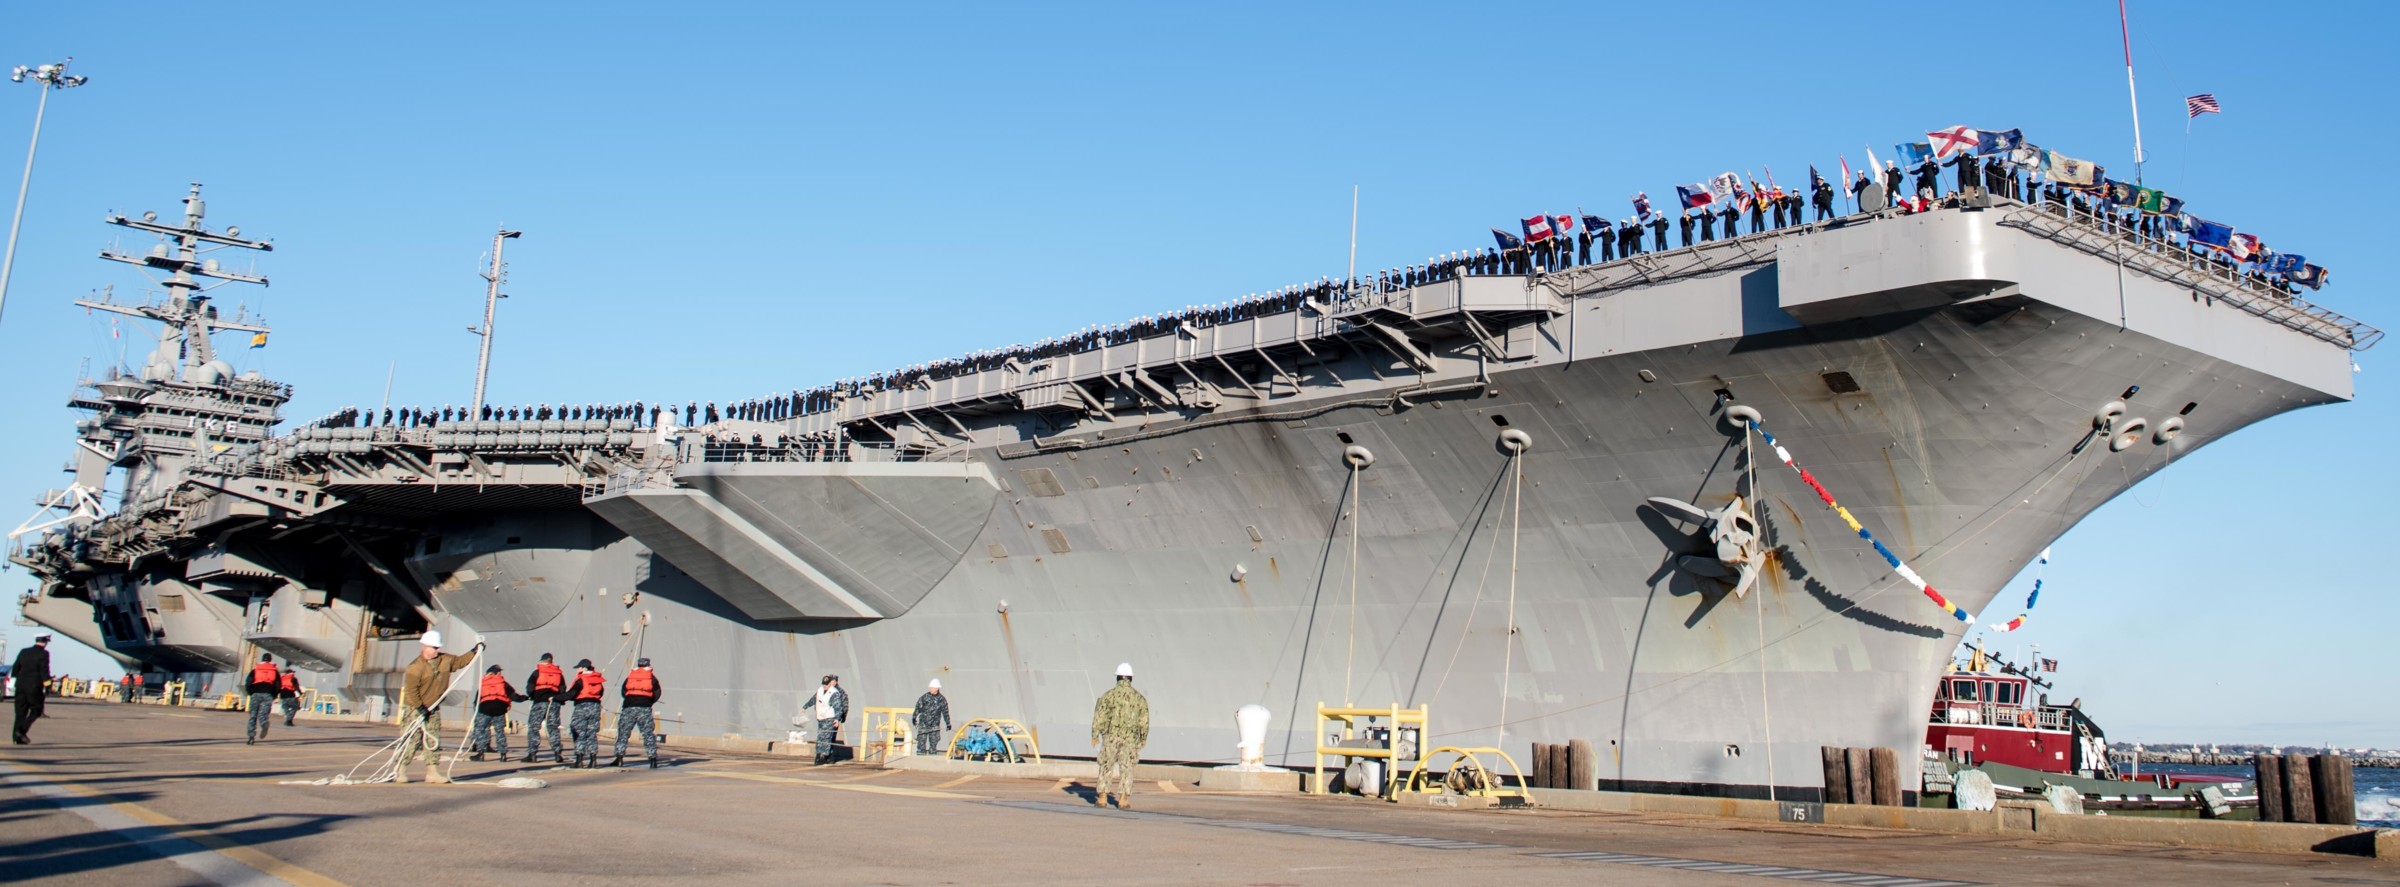 cvn-69 uss dwight d. eisenhower aircraft carrier us navy returning norfolk virginia 437